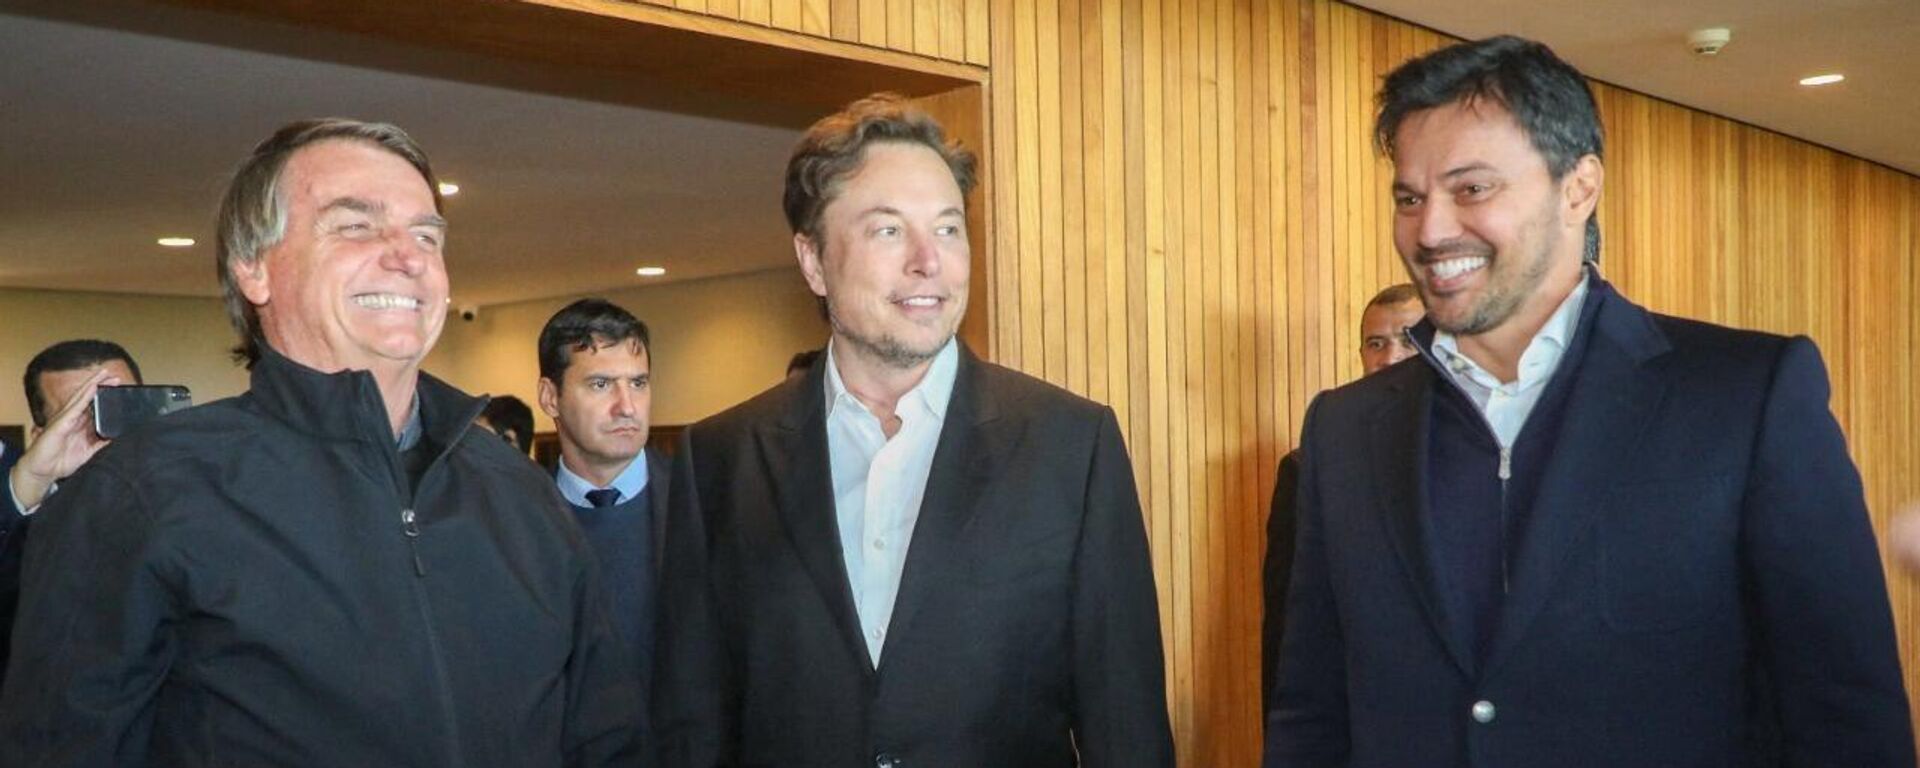 Presidente Jair Bolsonaro (E), seu ministro da Comunicação Fabio Faria (D) e CEO, e o engenheiro-chefe da SpaceX, Elon Musk, no evento Conecta Amazônia em Porto Feliz, SP, Brasil em 20 de maio de 2022 - Sputnik Brasil, 1920, 19.07.2022